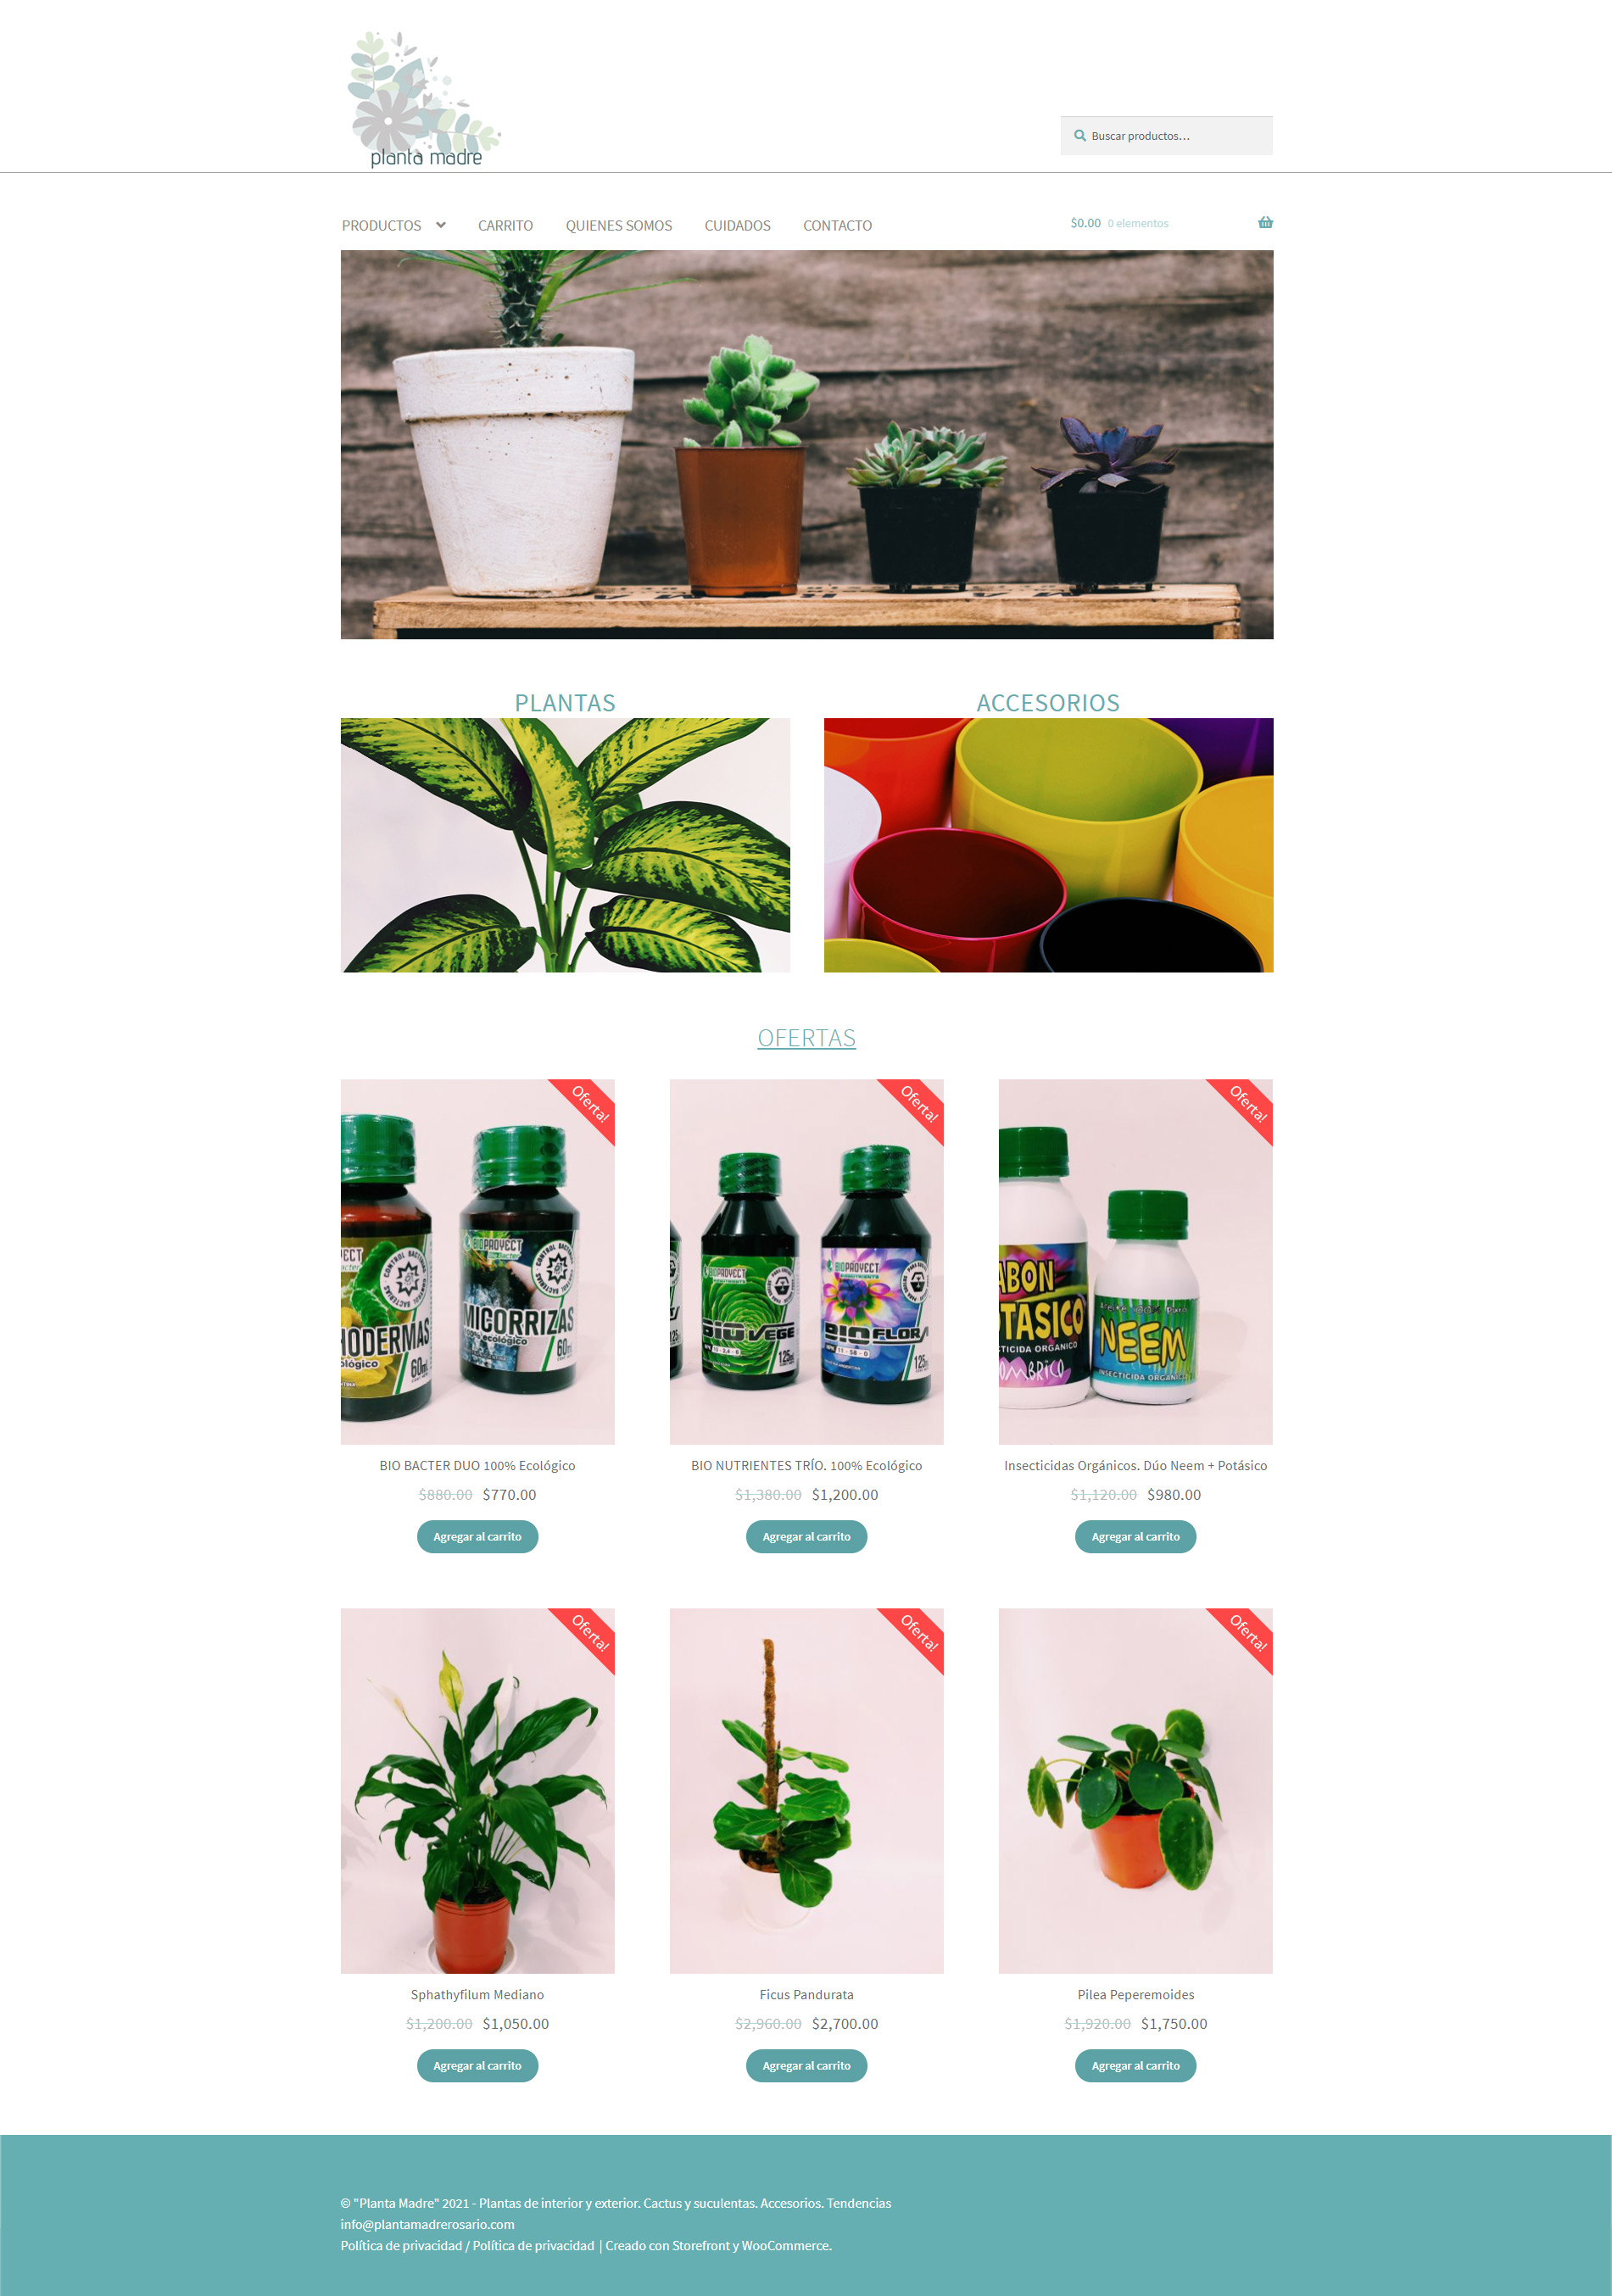 Tienda online "planta madre" Plantas de interior y exterior. Cactus y suculentas. Accesorios. Tendencias